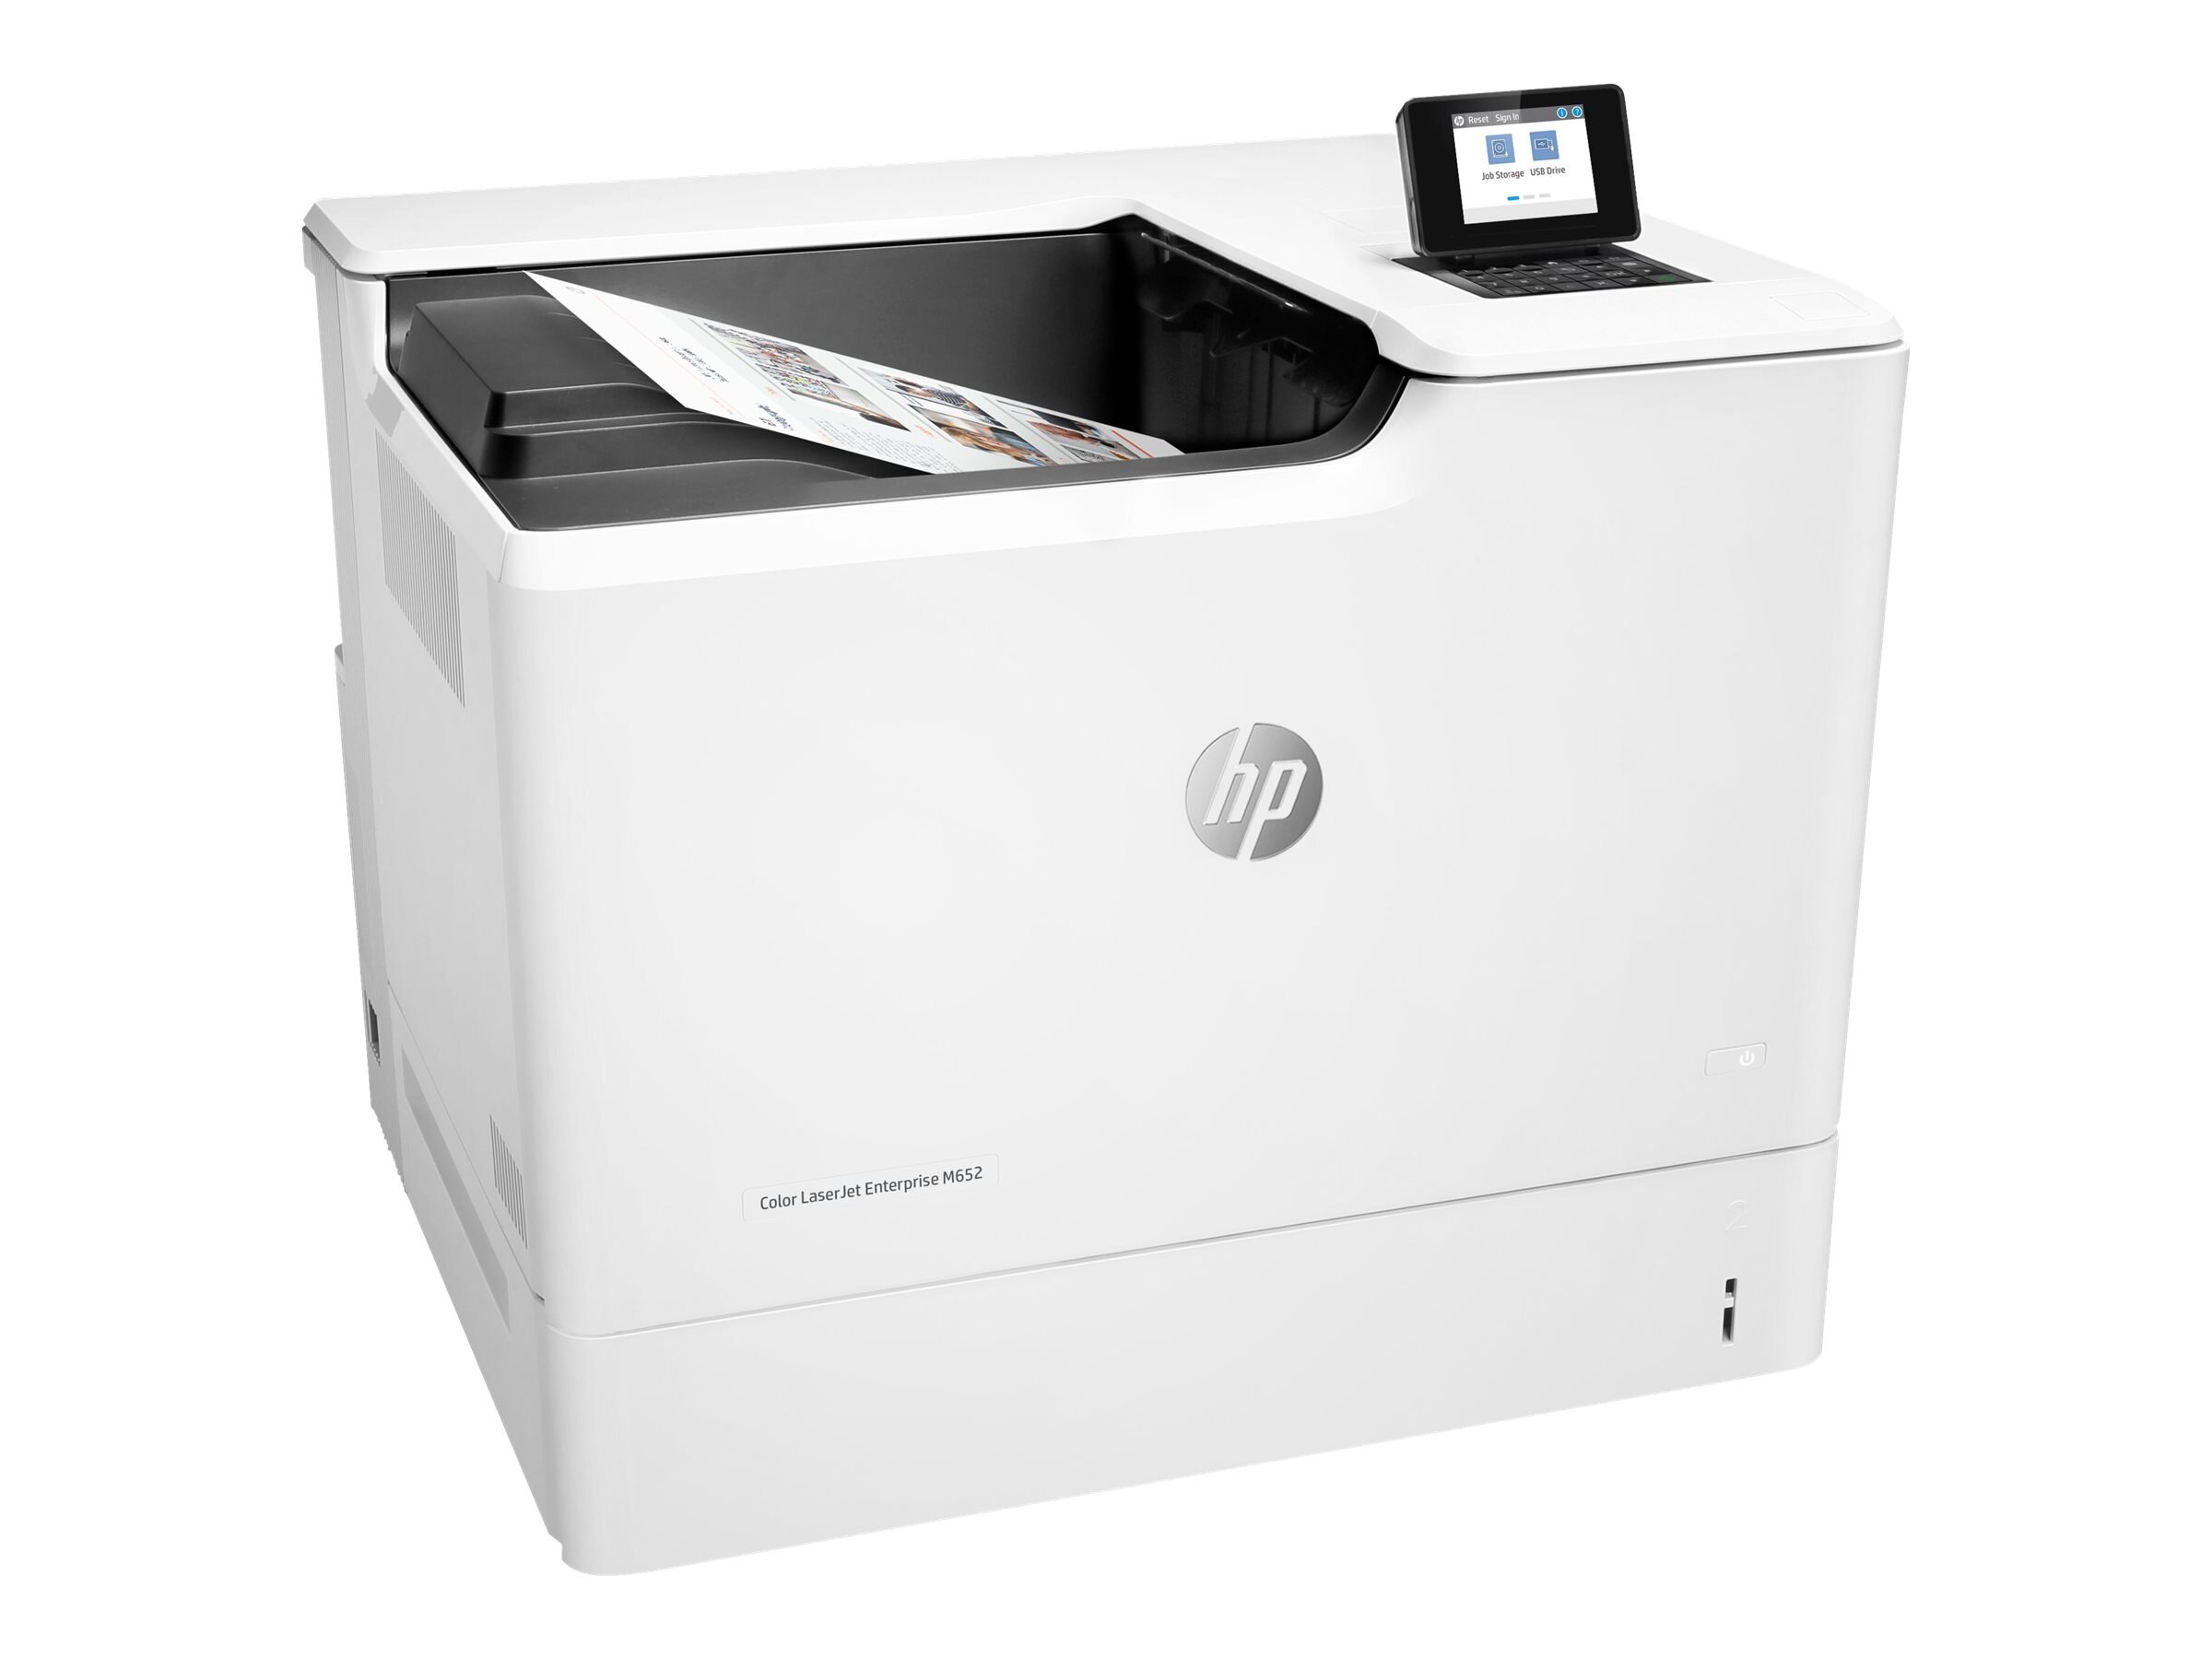 Máy in HP Color LaserJet Enterprise M652dn (Tuân thủ TAA...) là một sản phẩm tuyệt vời cho những người yêu công nghệ và đam mê văn phòng phẩm. Với tính năng in đa dạng và chất lượng in ấn tuyệt vời, sản phẩm này sẽ giúp bạn tiết kiệm chi phí và thời gian khi in ấn. Hãy nhanh tay sở hữu ngay để trải nghiệm điều kì diệu mà nó mang lại.